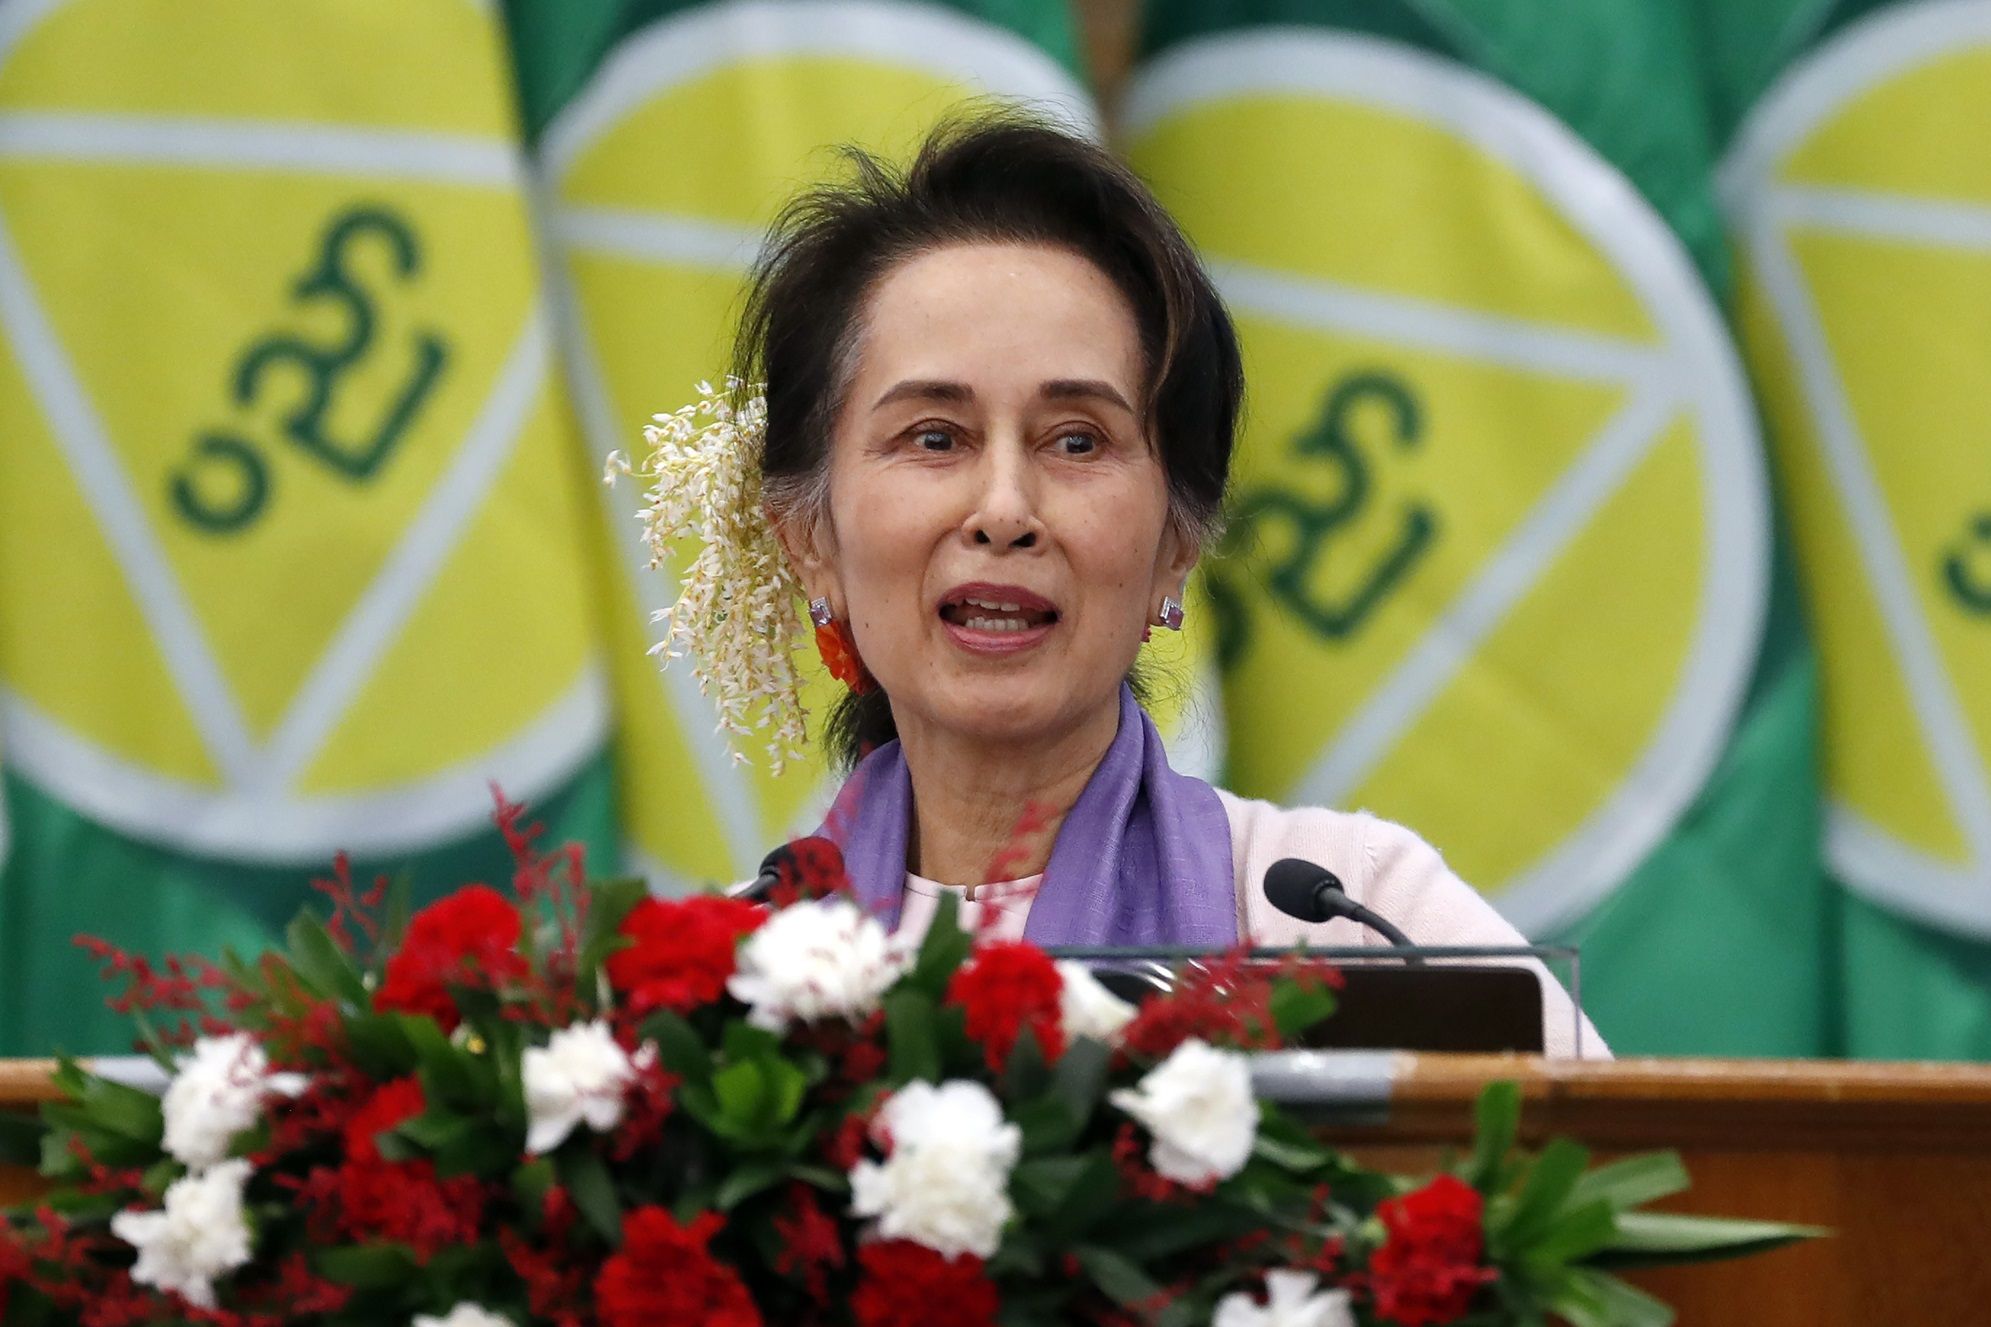 Junta Myanmar Pindahkan Aung San Suu Kyi dari Penjara ke Tahanan Rumah